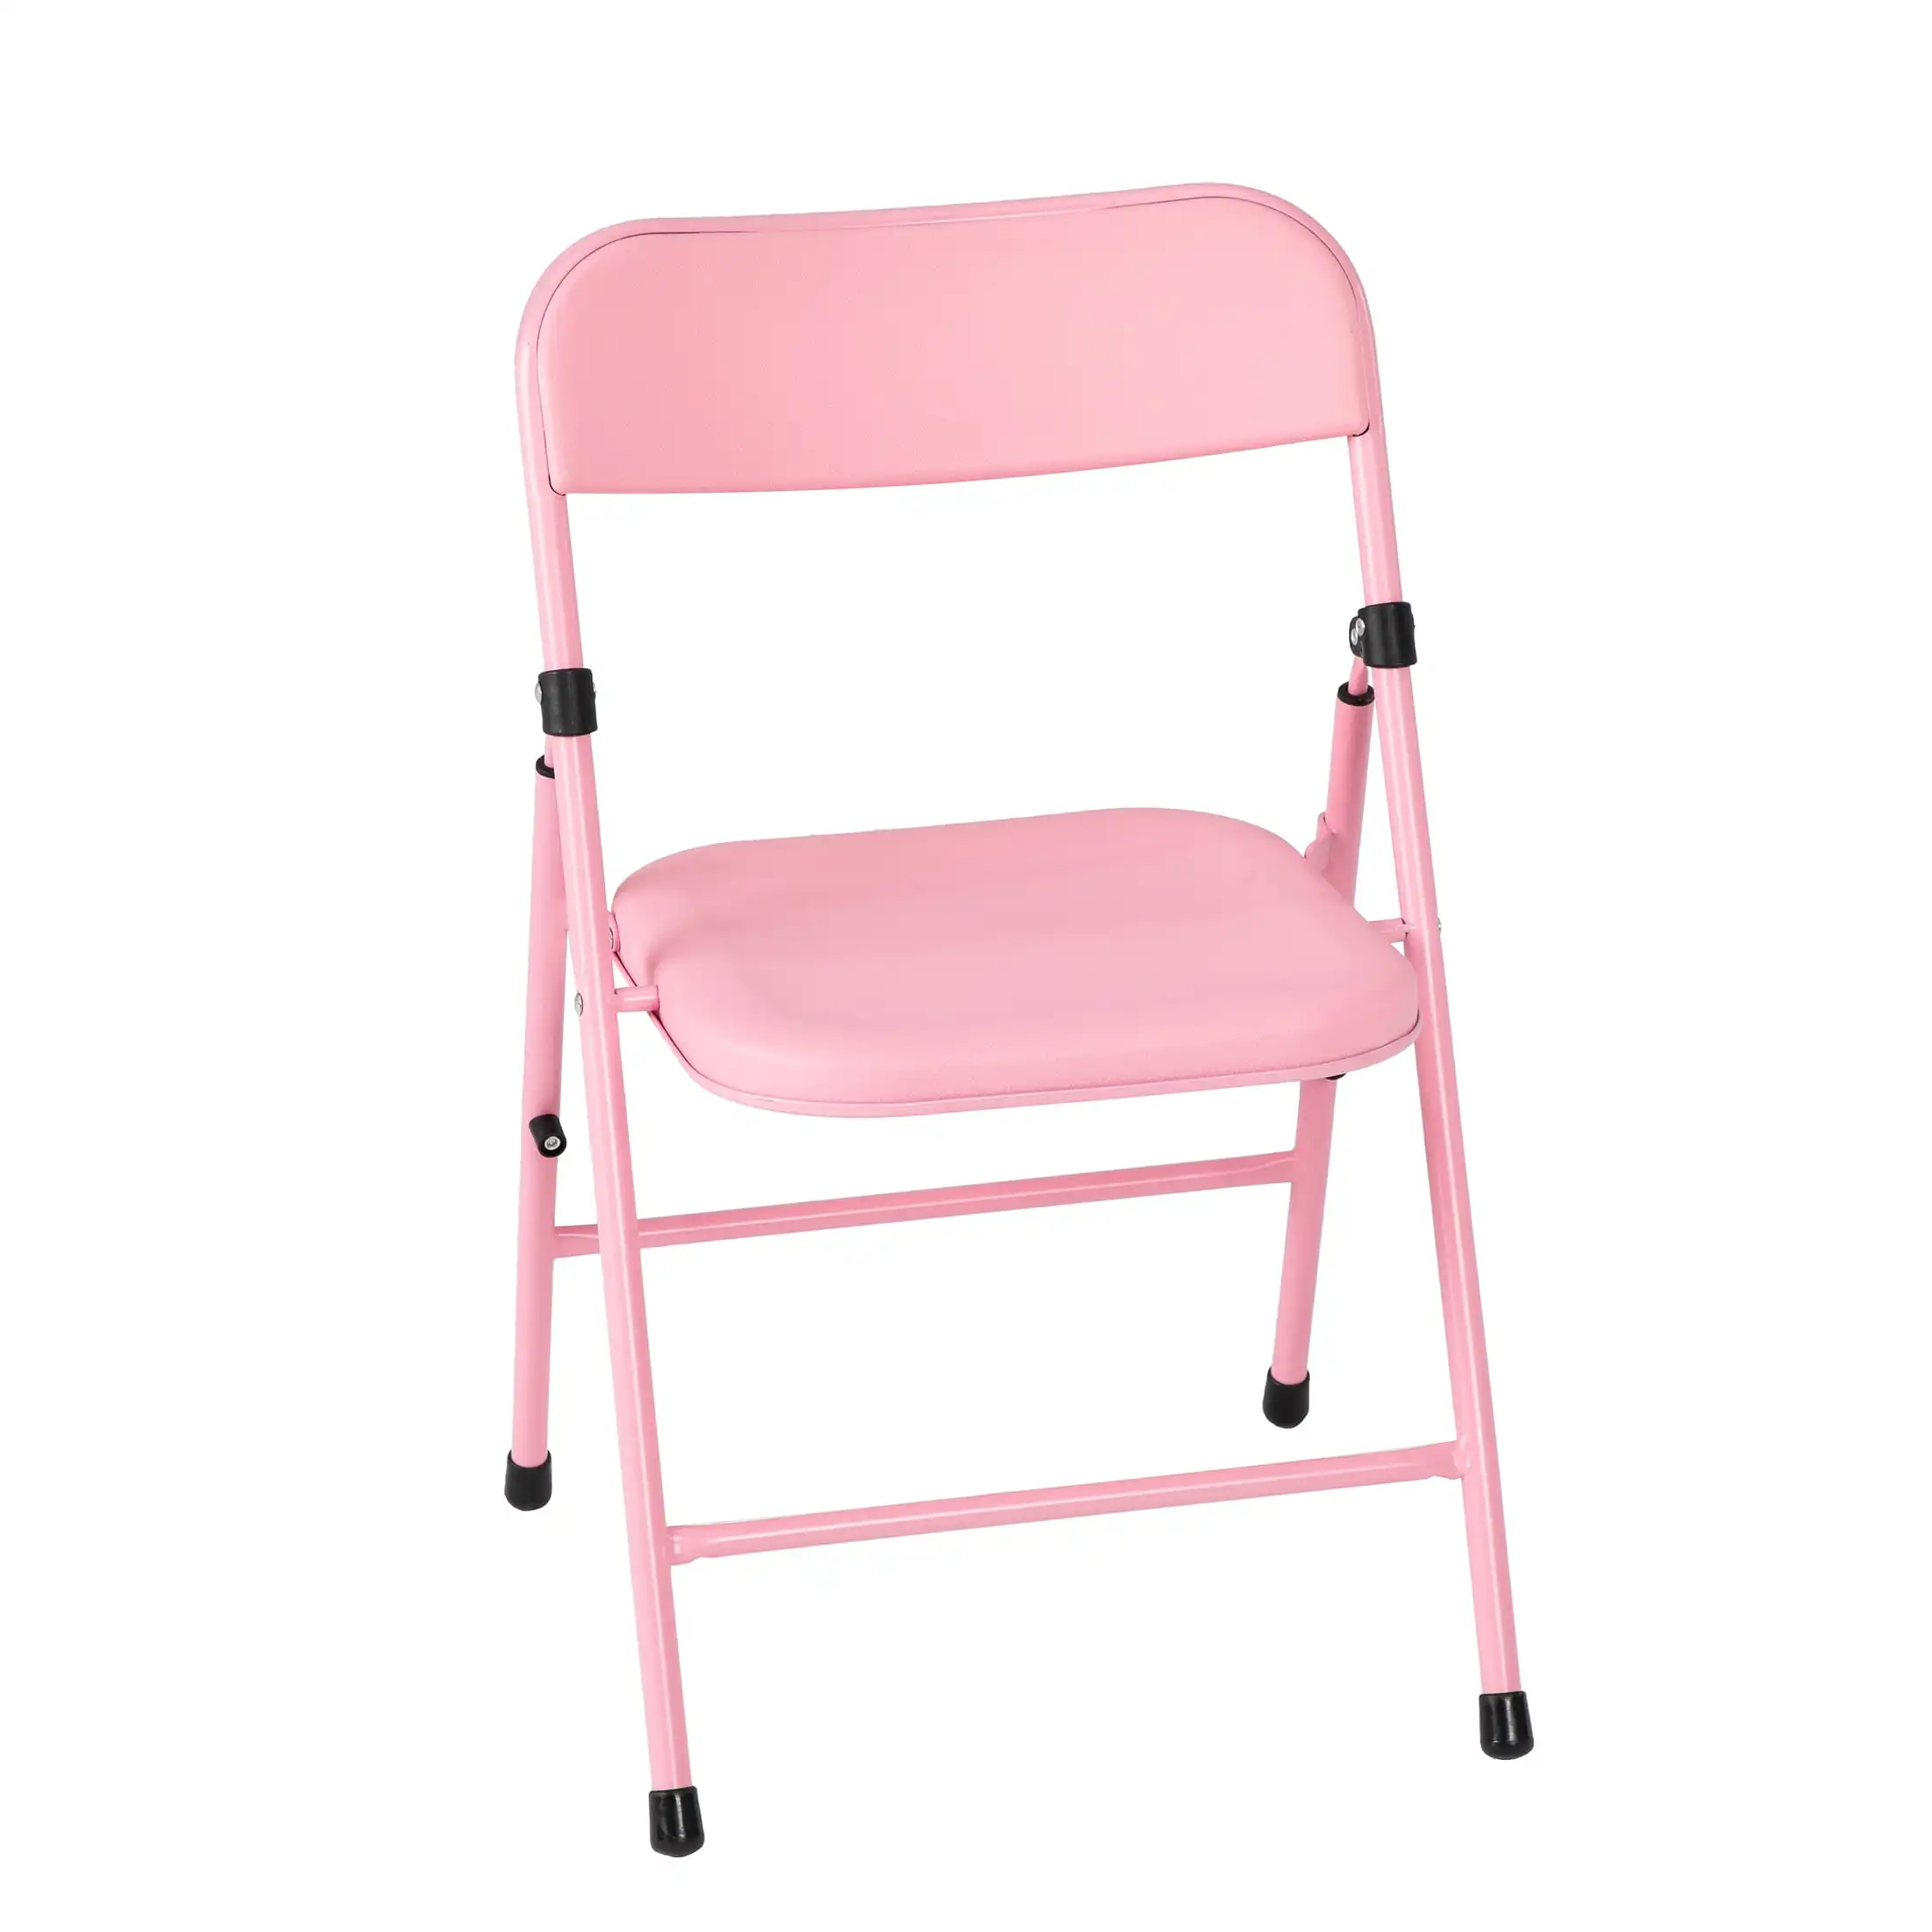 Nuovo design in resina portatile in plastica rosa per bambini, dimensioni e mobili da esterno, sedia da giardino